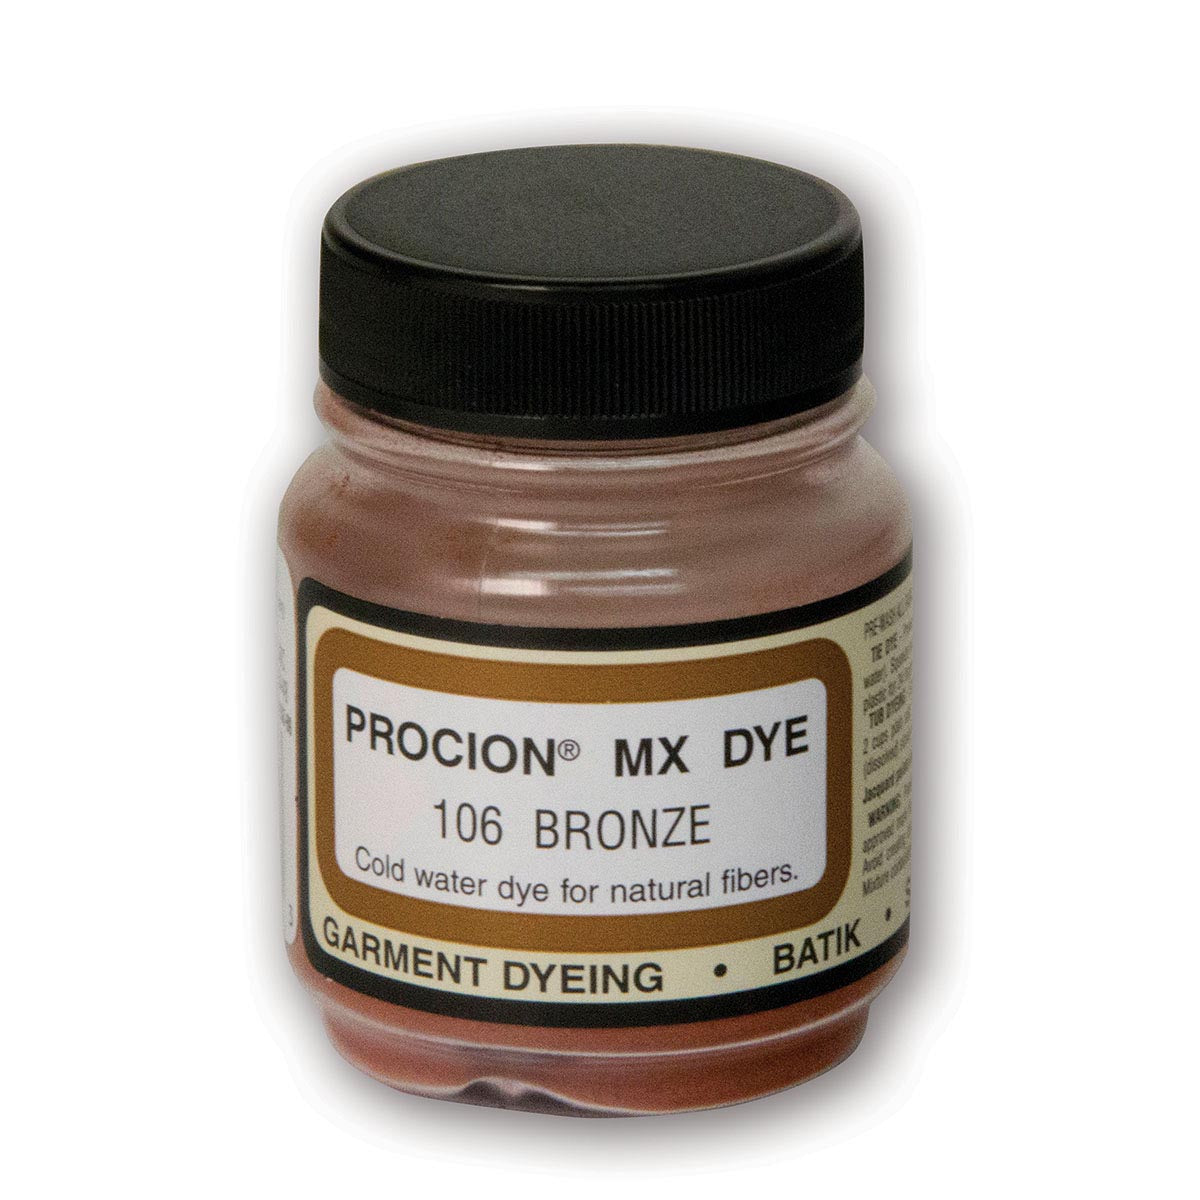 Jacquard - Procion MX Dye - Stoff Textil - Bronze 106